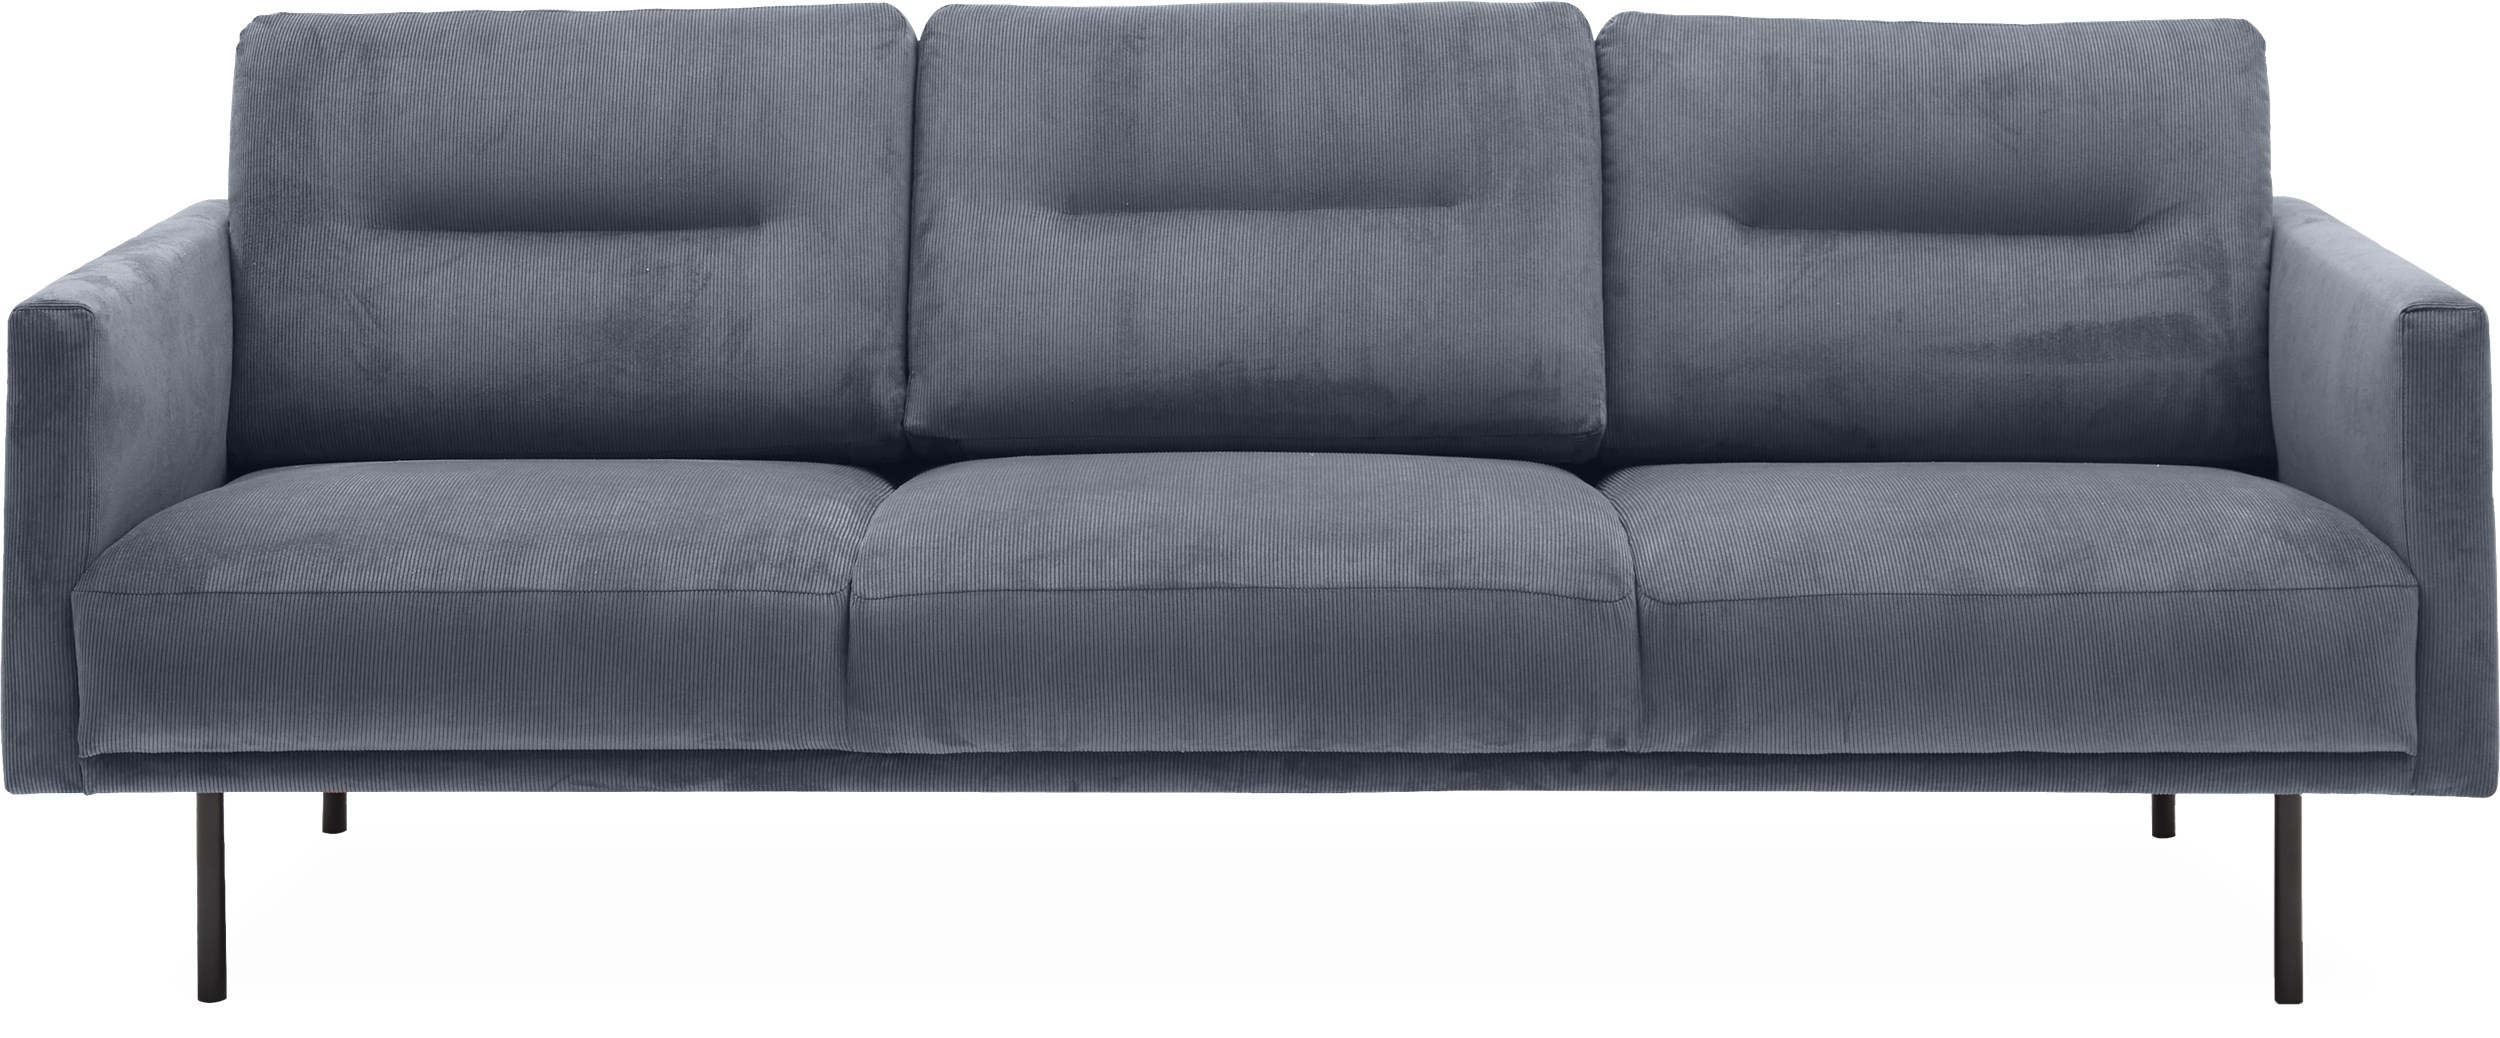 Larvik 3 pers Sofa - Wave 40 Slate grey stof og ben i sortlakeret metal